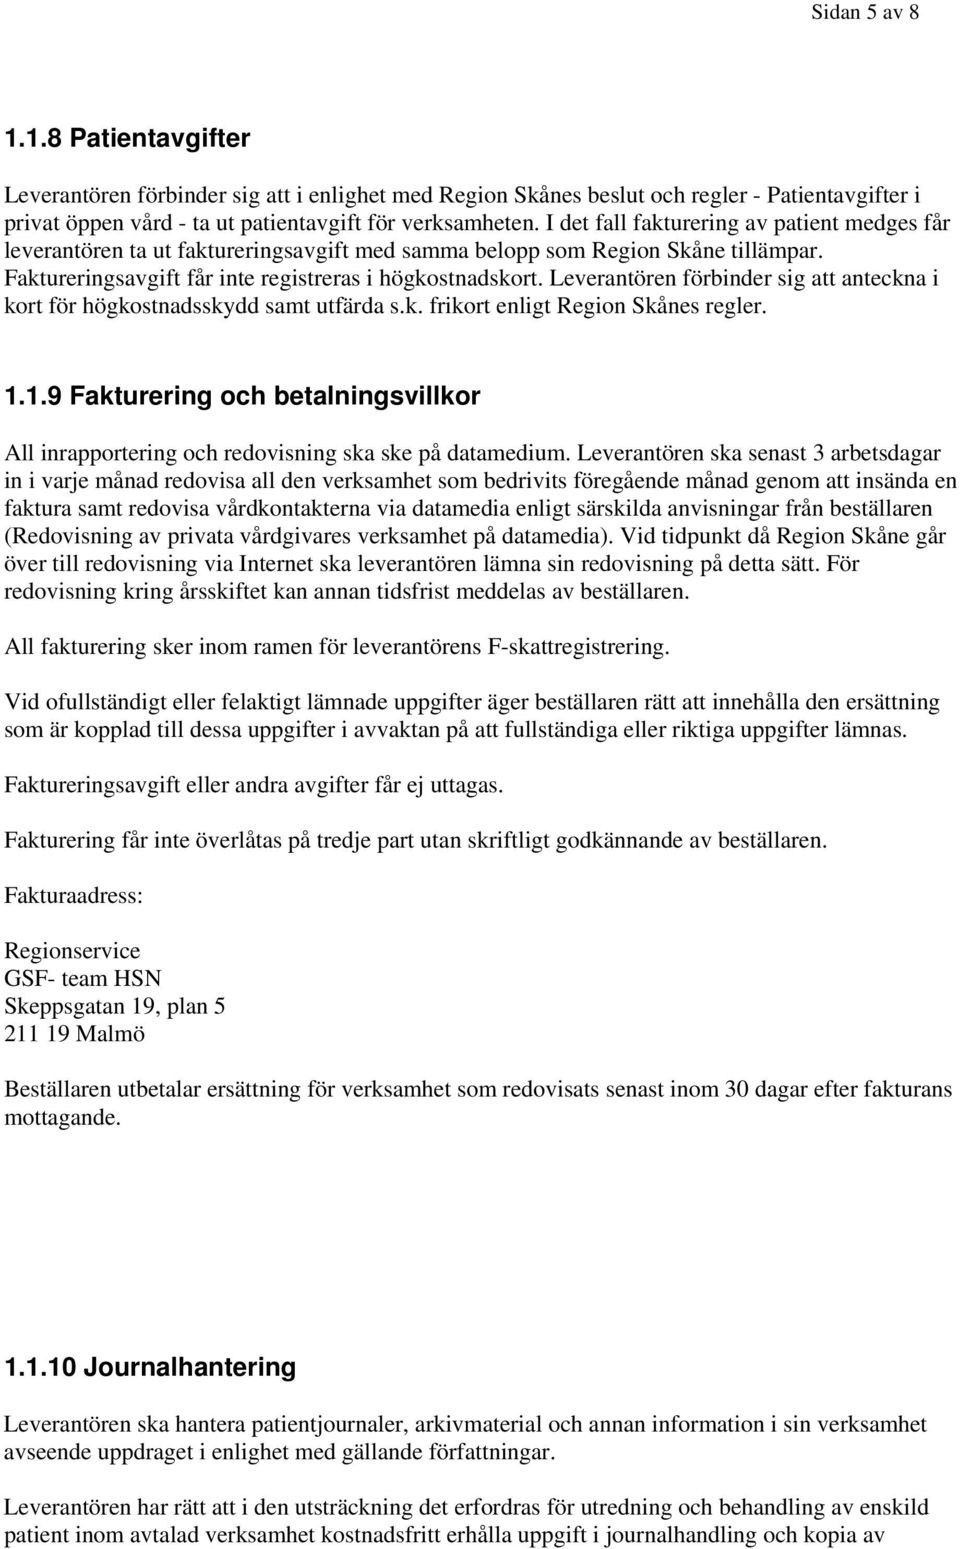 Leverantören förbinder sig att anteckna i kort för högkostnadsskydd samt utfärda s.k. frikort enligt Region Skånes regler. 1.